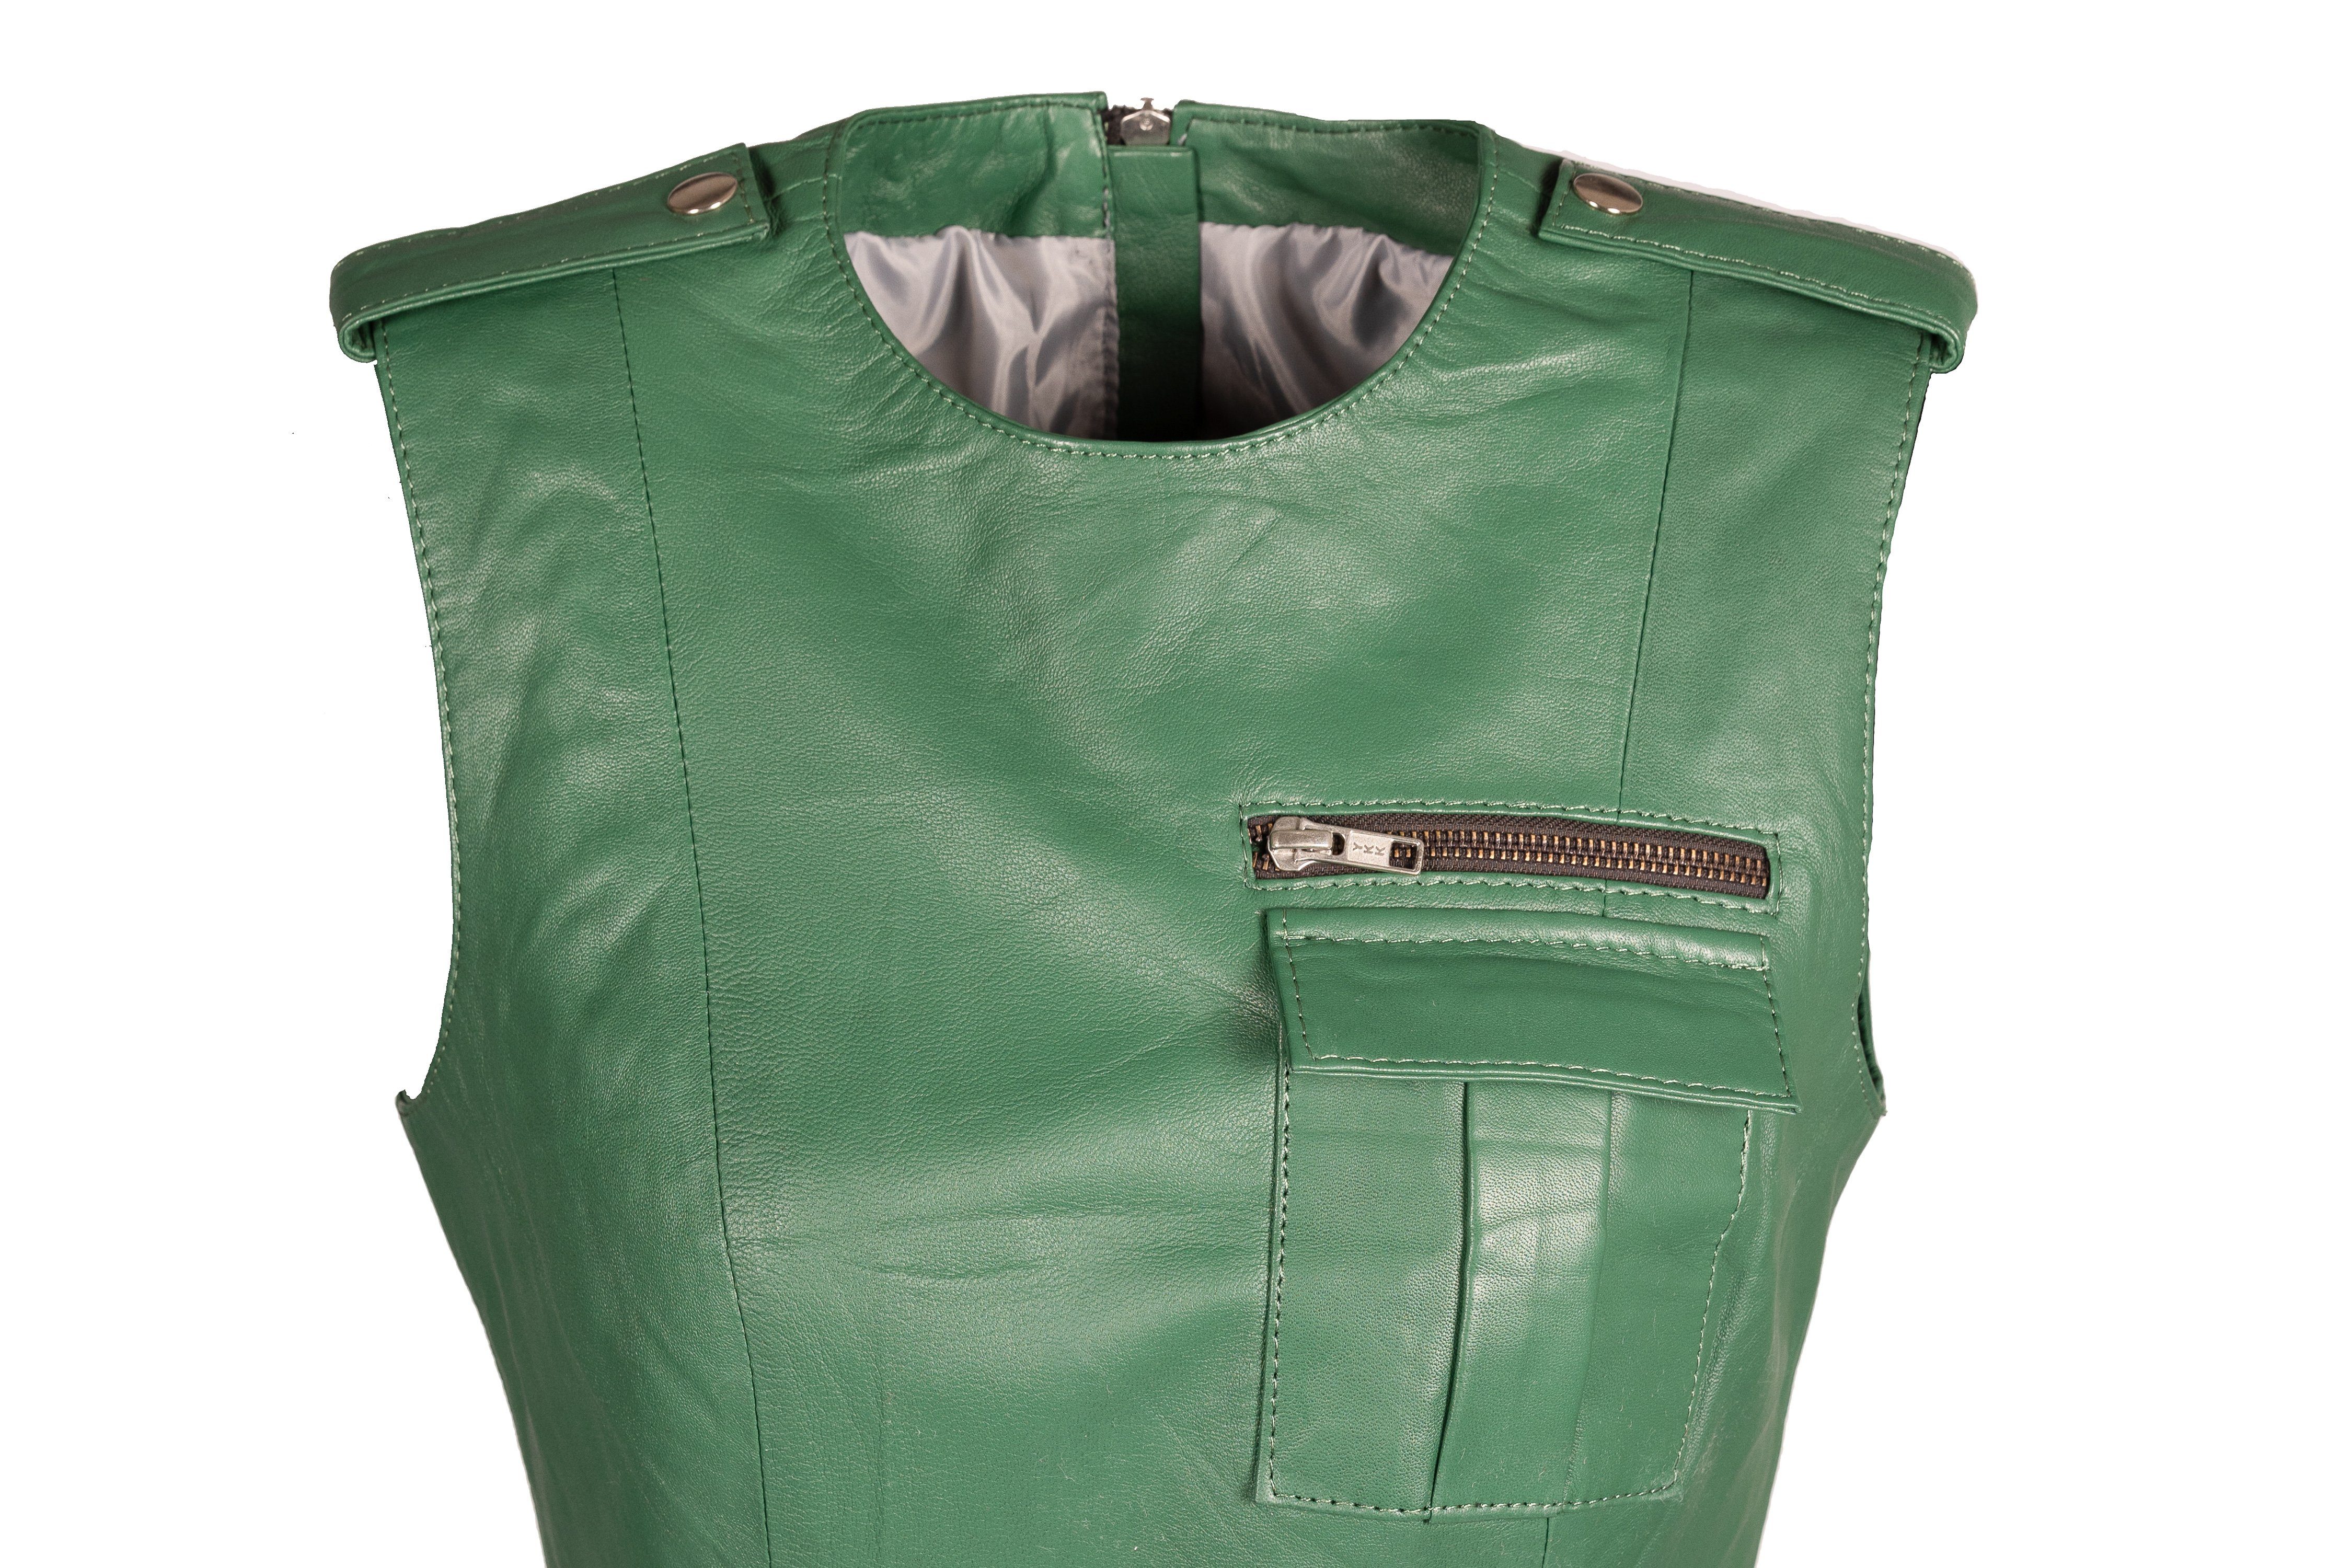 grün Be aus Lederkleid mit Lammnappa grünes Cargotaschen Lederkleid Beverly Hills Noble Sportliches